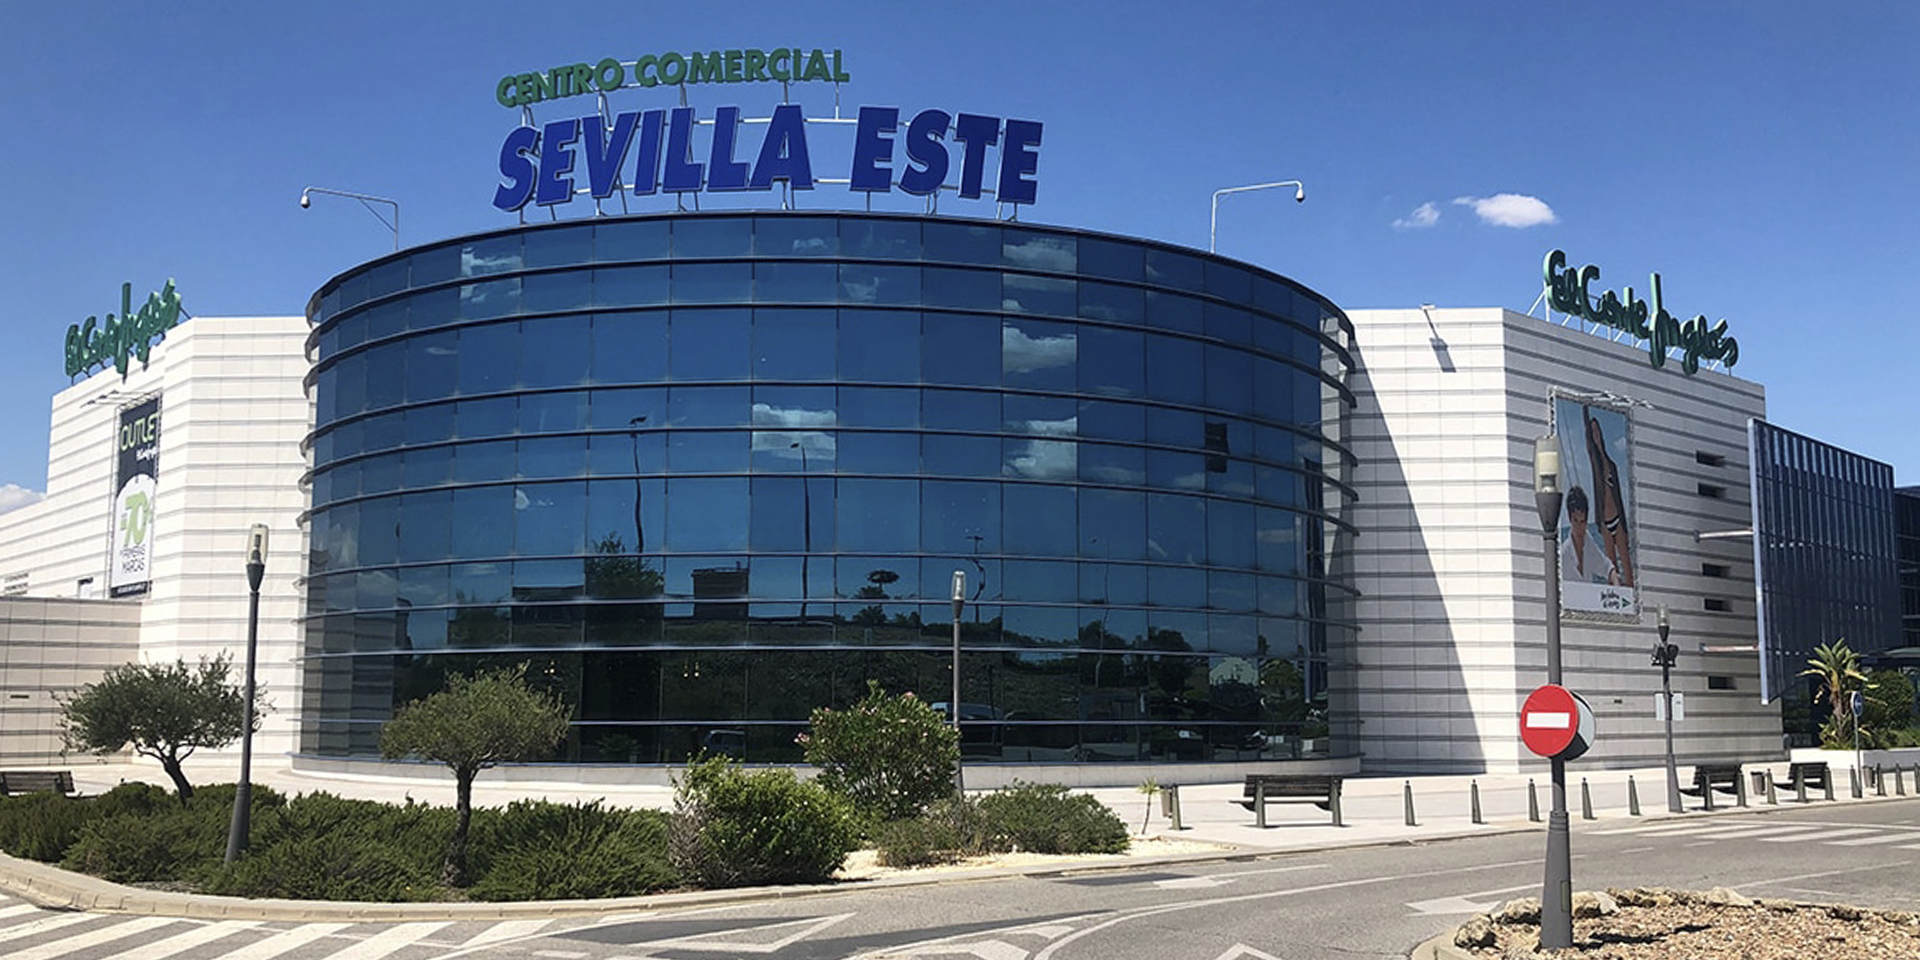 El Corte Inglés Sevilla Este